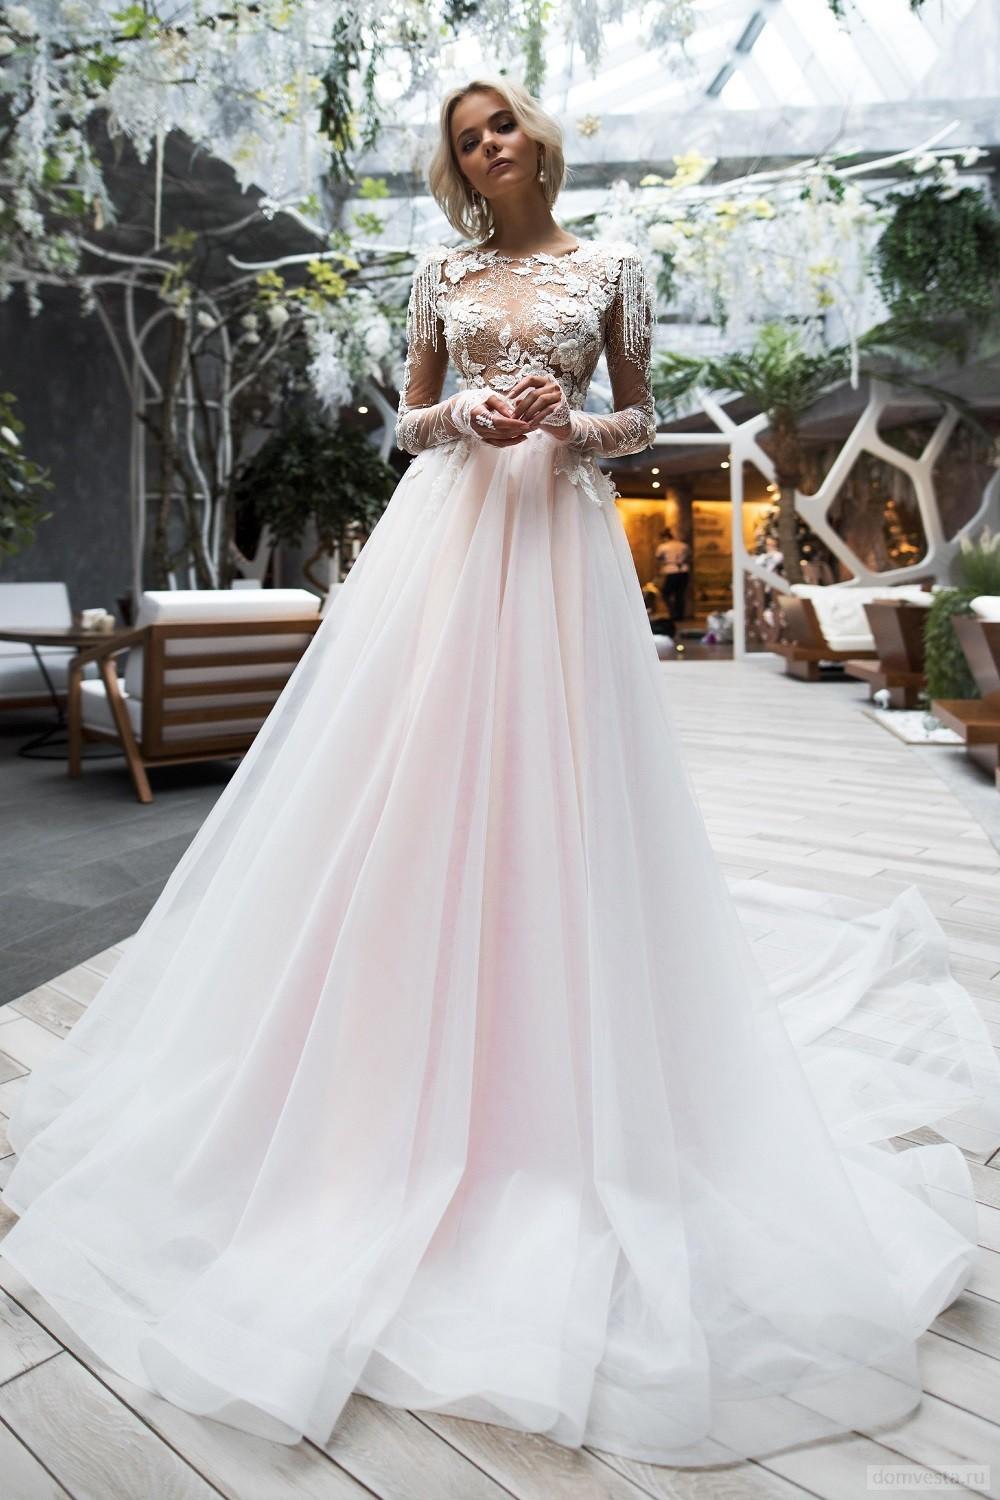 Свадебное платье с кружевным верхом